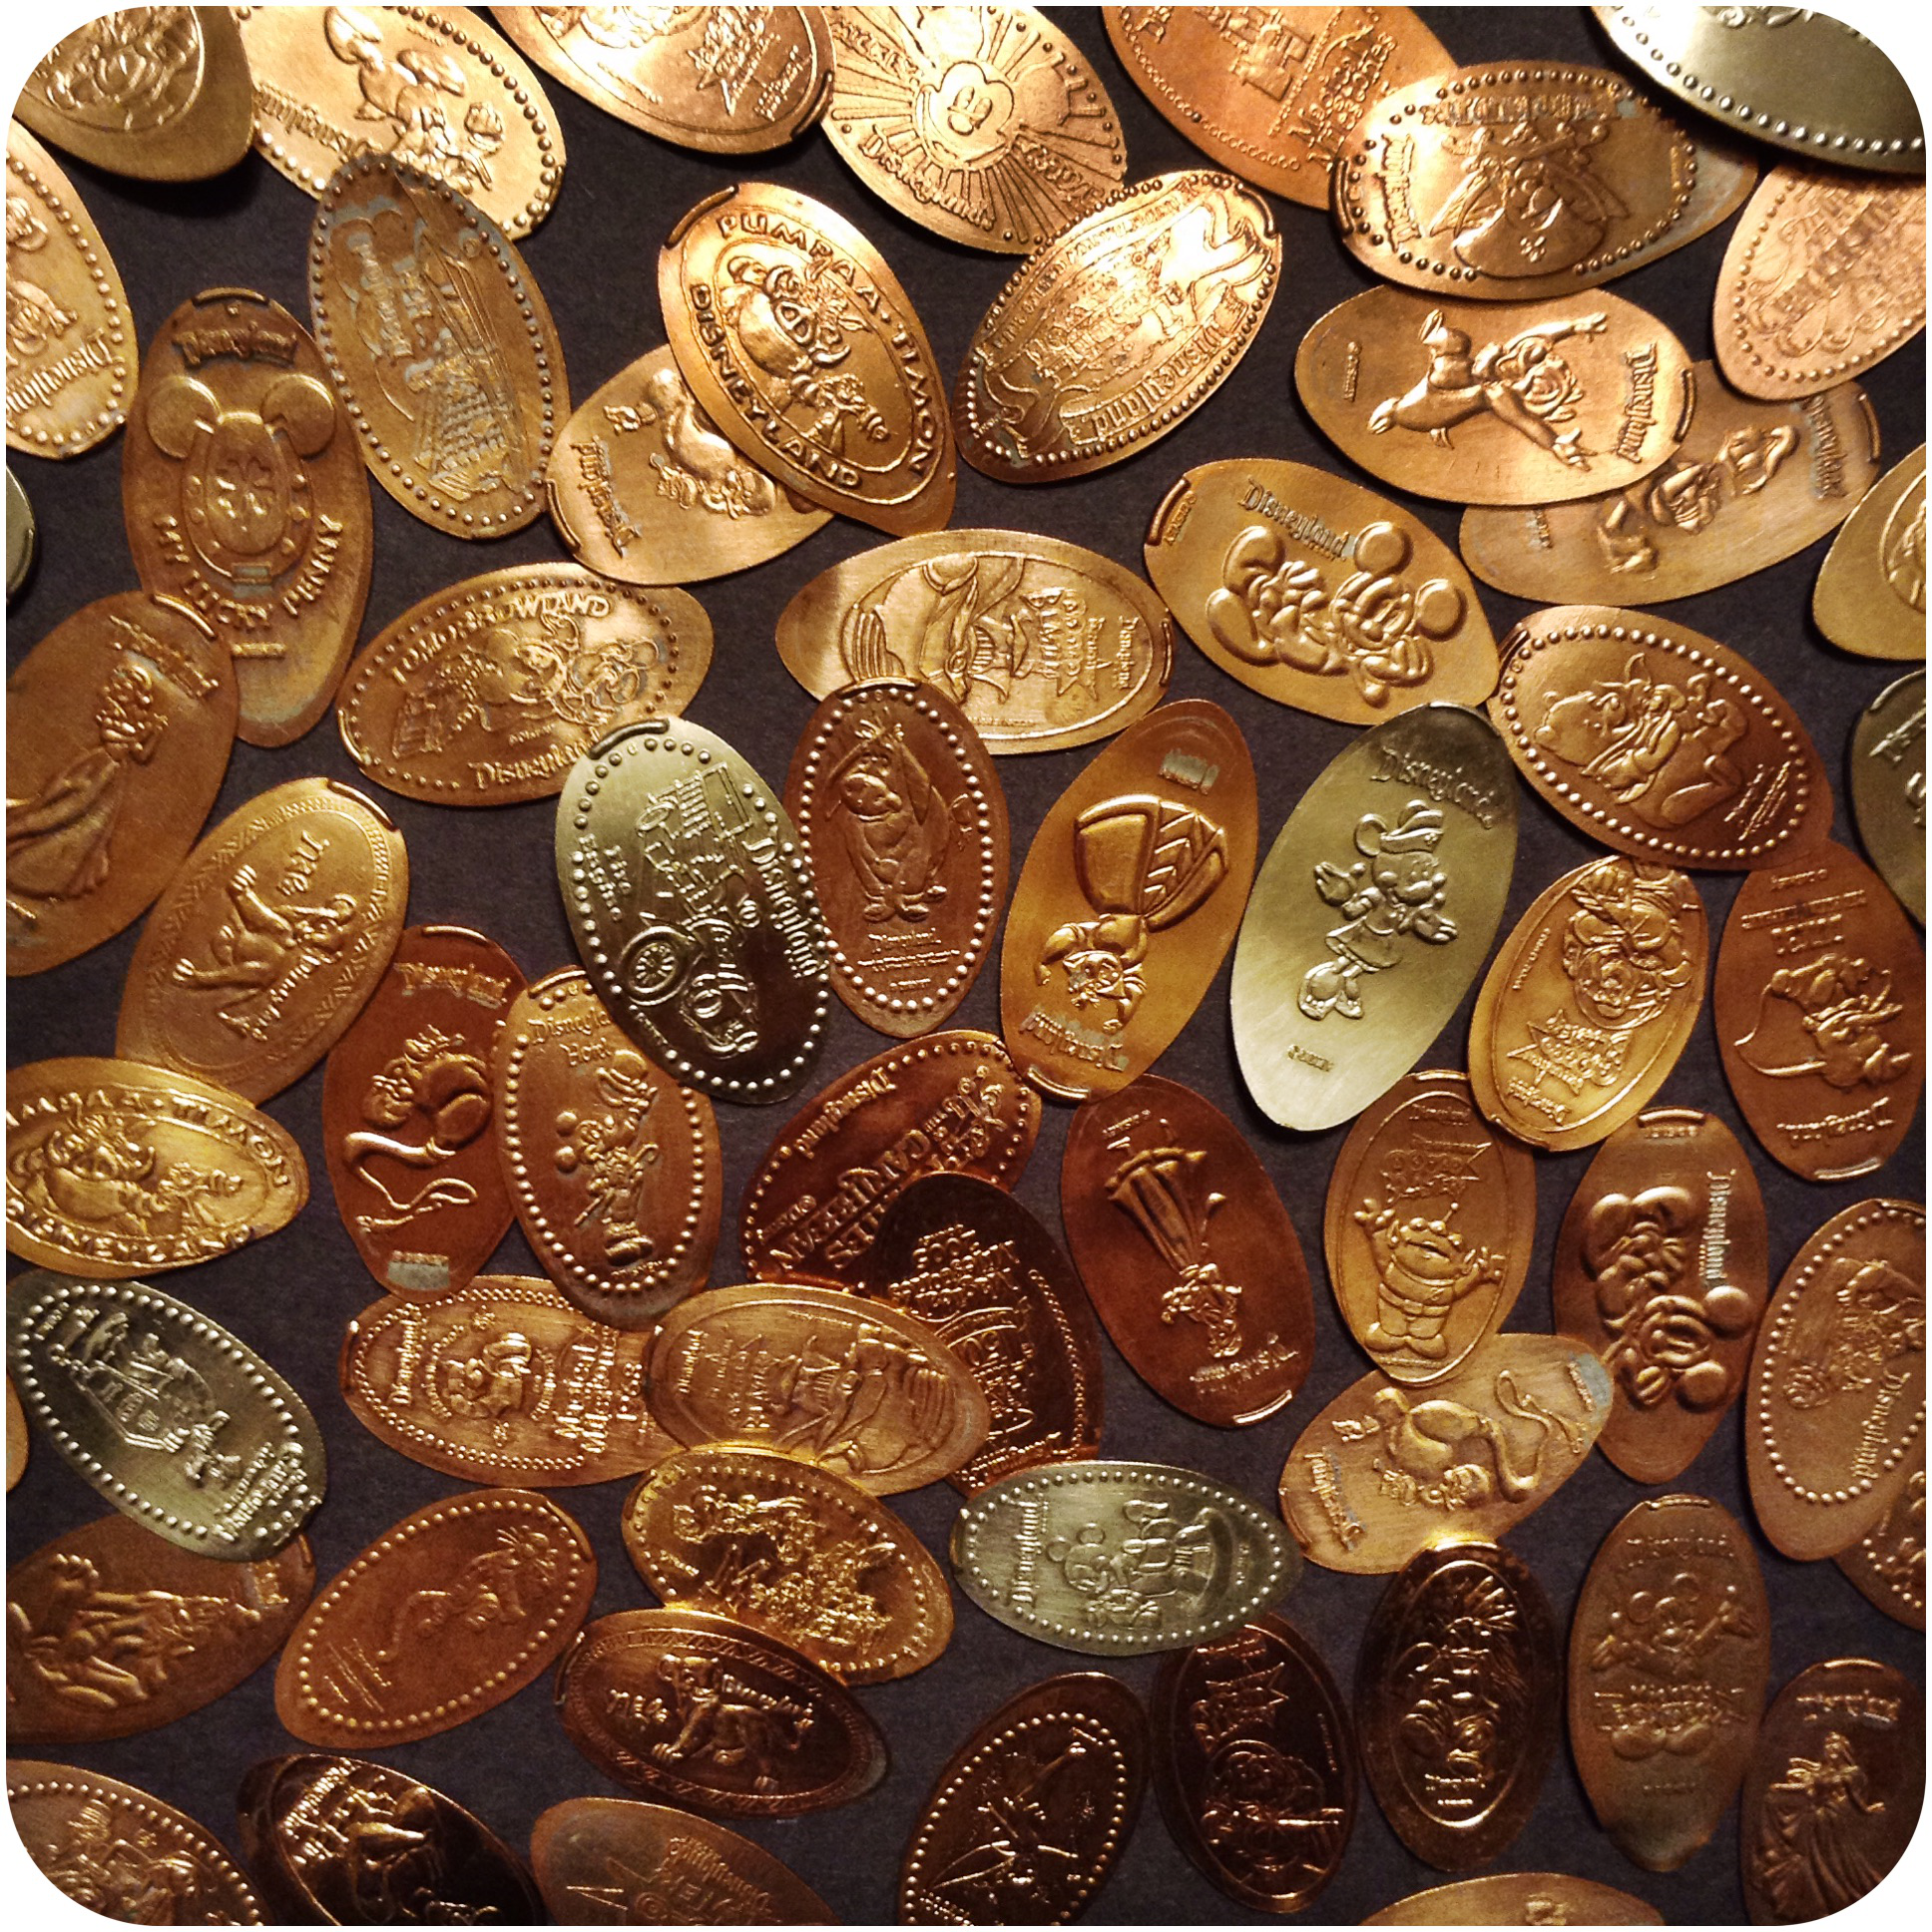 Pick ten coins from Disneyland!